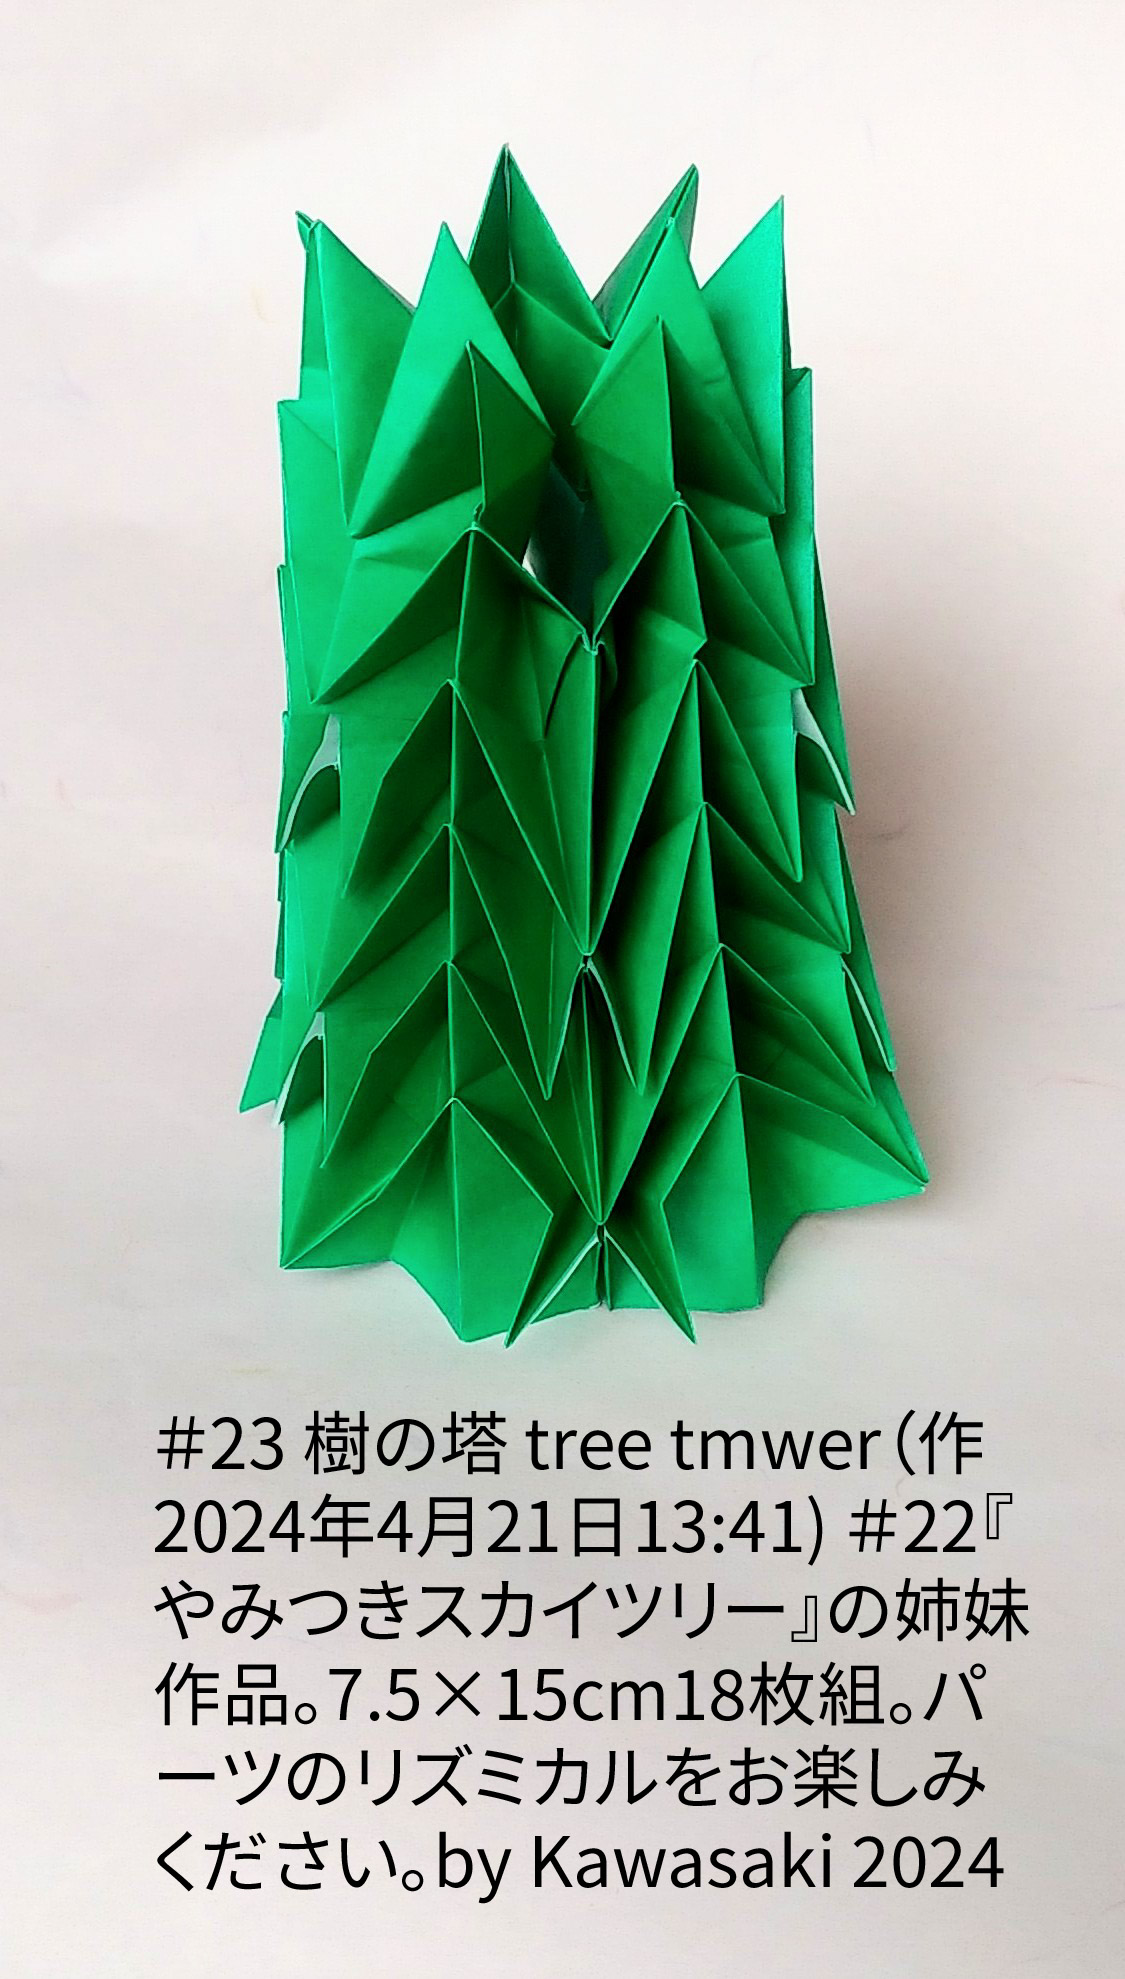 2024/04/20(Sat) 14:08「＃23 樹の塔 tree tmwer（作2024年4月21日13:41) 」川崎敏和 T.Kawasaki
（創作者 Author：川崎敏和 T.Kawasaki,　製作者 Folder：川崎敏和 T.Kawasaki ,　出典 Source：2024年川崎敏和折り紙キット＃23）
 ＃22『やみつきスカイツリー』の姉妹作品。7.5×15cm18枚組。パーツのリズミカルをお楽しみください。by Kawasaki 2024